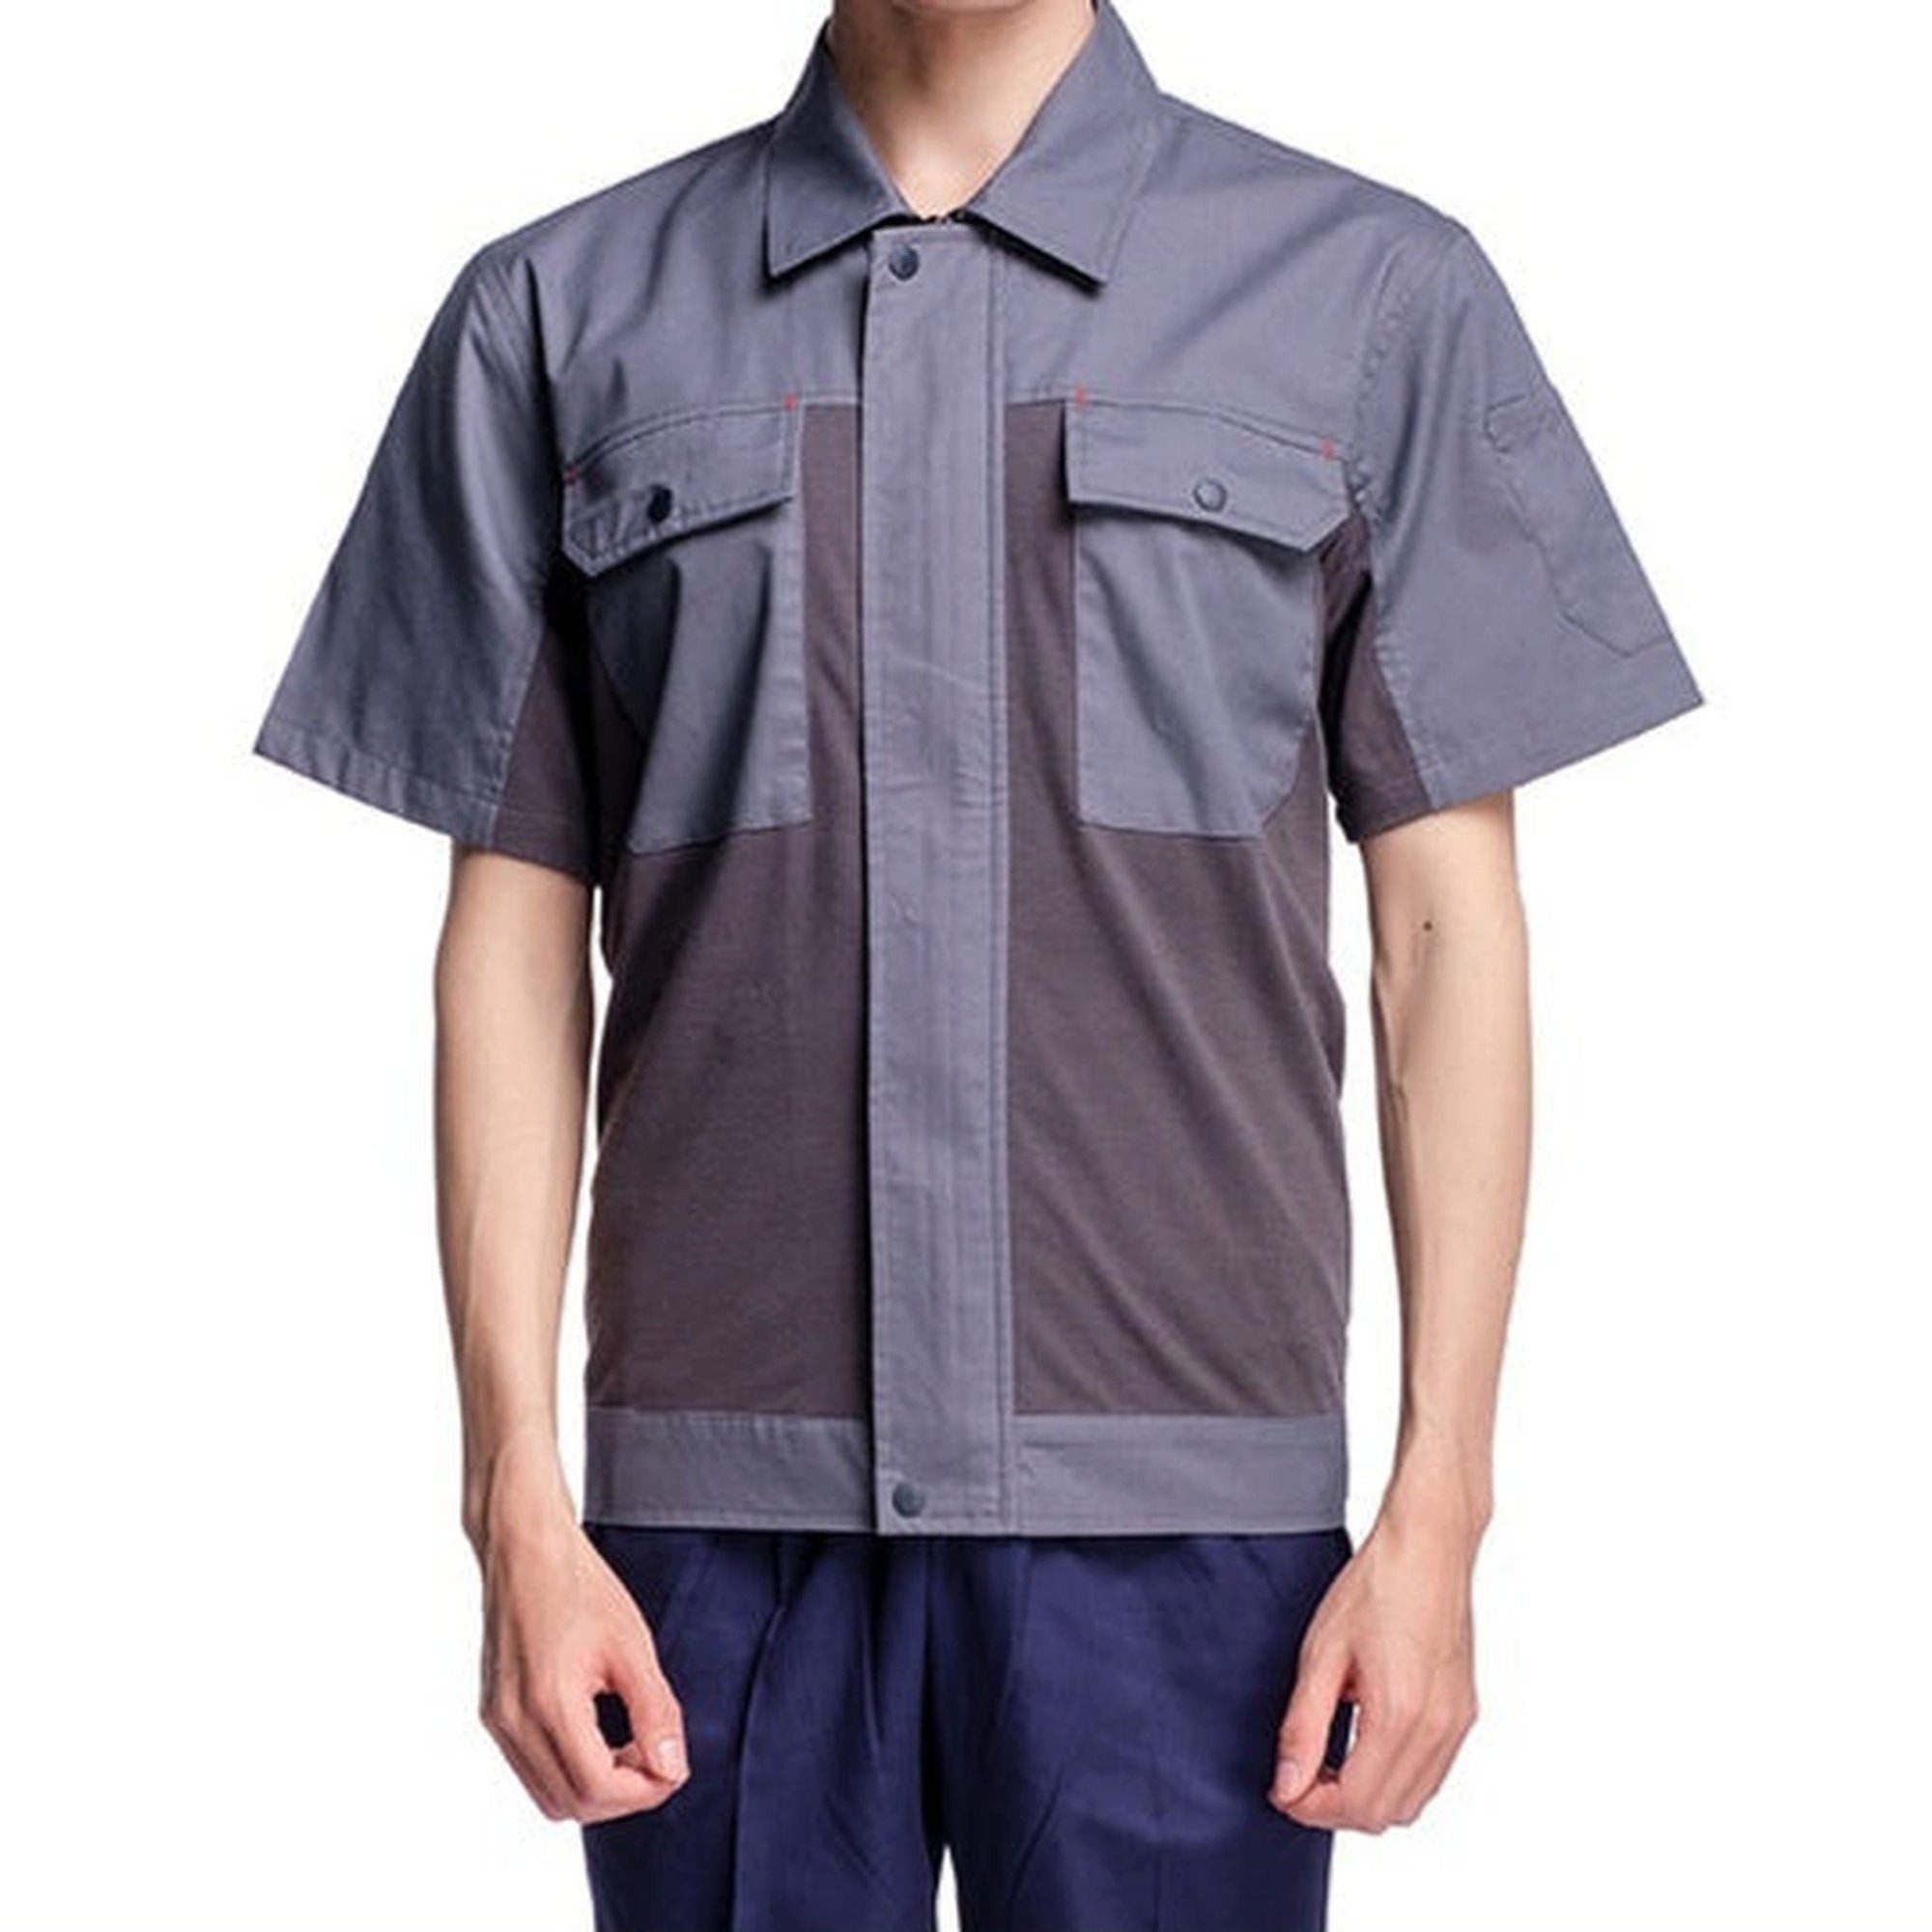 AUKUU Arbeitsoverall Ein Satz Arbeitskleidung, geeignet für Sommerarbeitsschutzkleidung in Werkstätten und Fabriken für die Automobilreparatur.